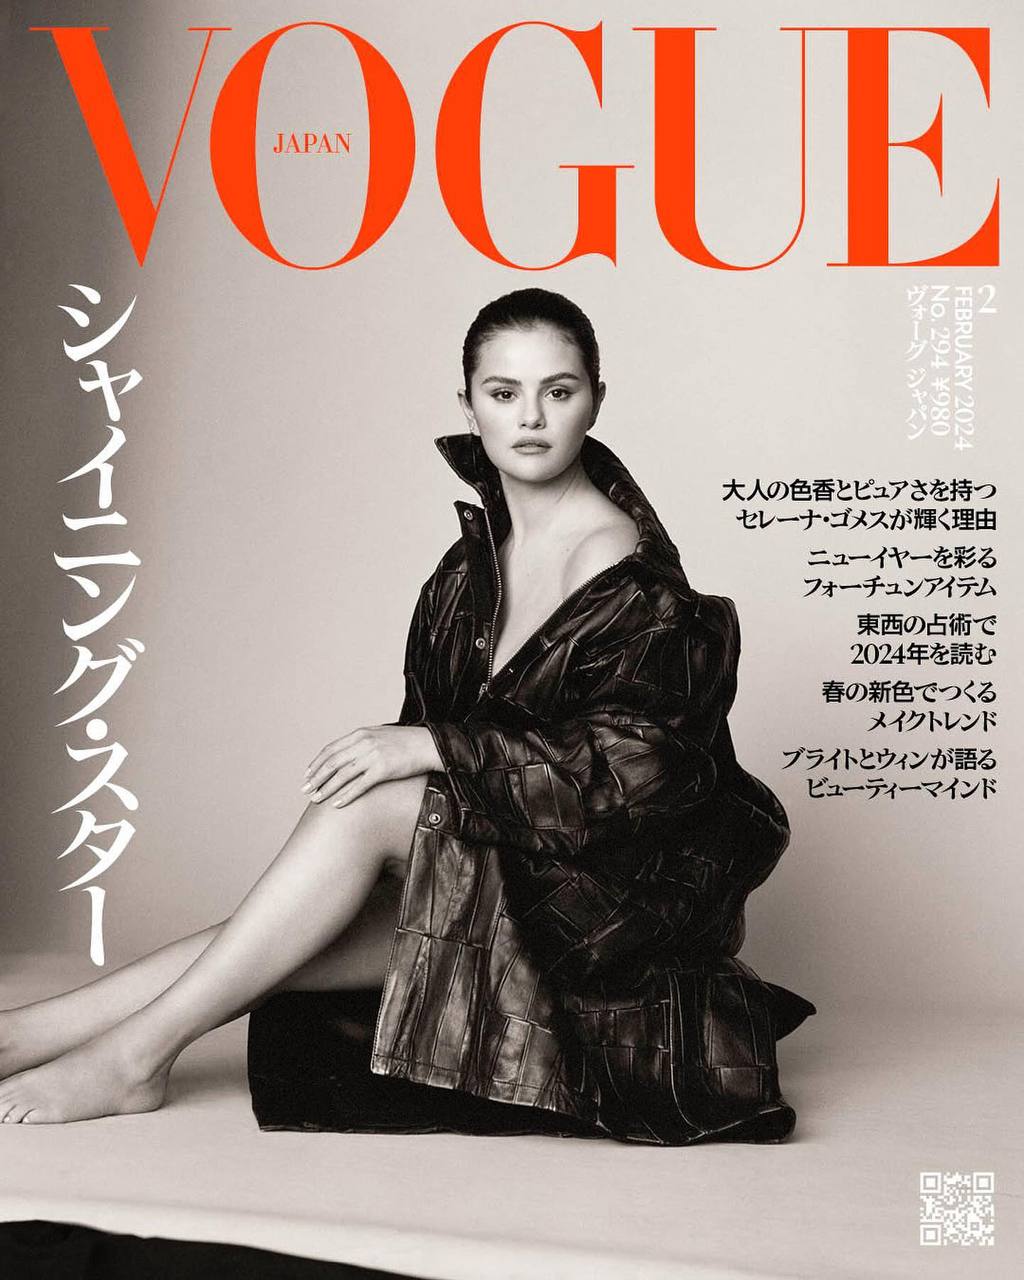 Селена Гомес попала сразу на две обложки Vogue в двух разных странах